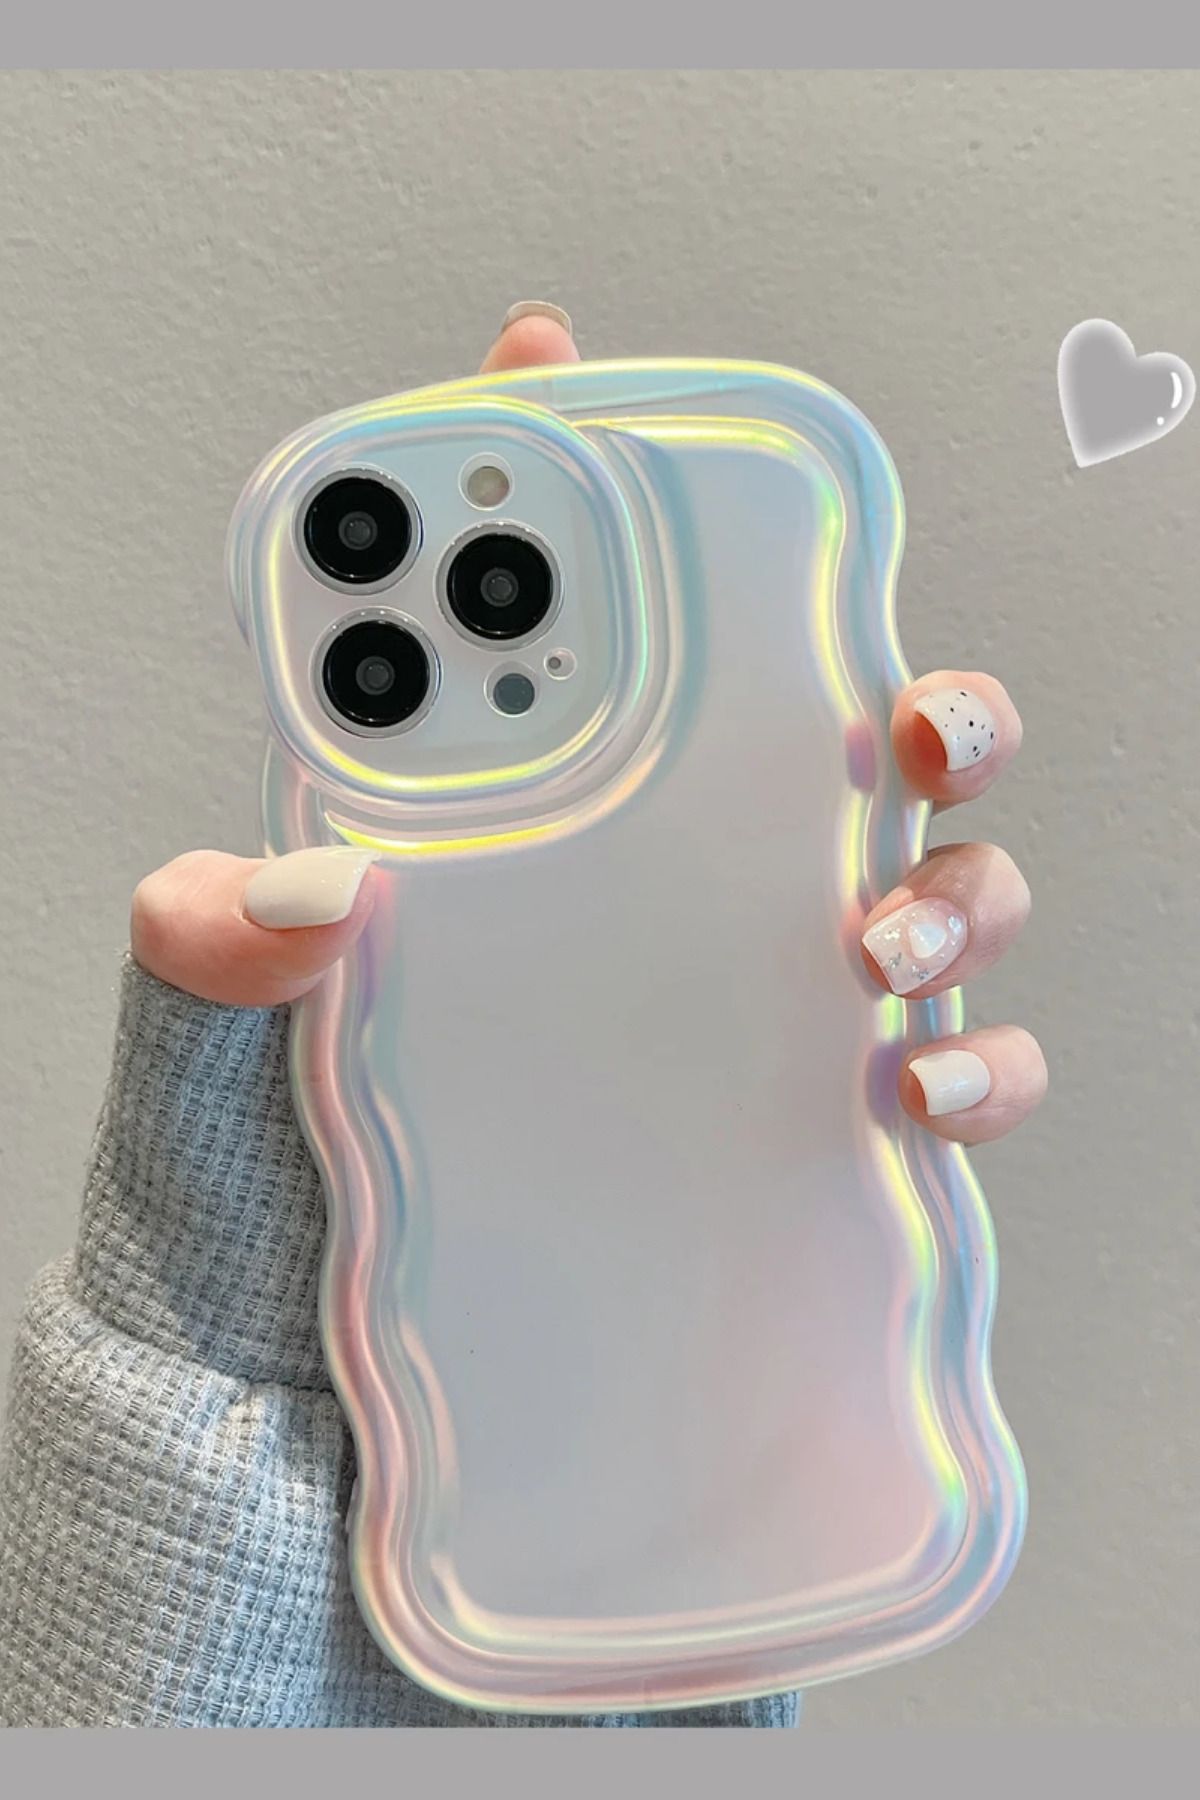 KVK PRİVACY Iphone 14 Promax Kılıf Hologram Kıvrımlı Renk Geçişli Mat Darbelere Karşı Dayanıklı Yumuşak Kapak